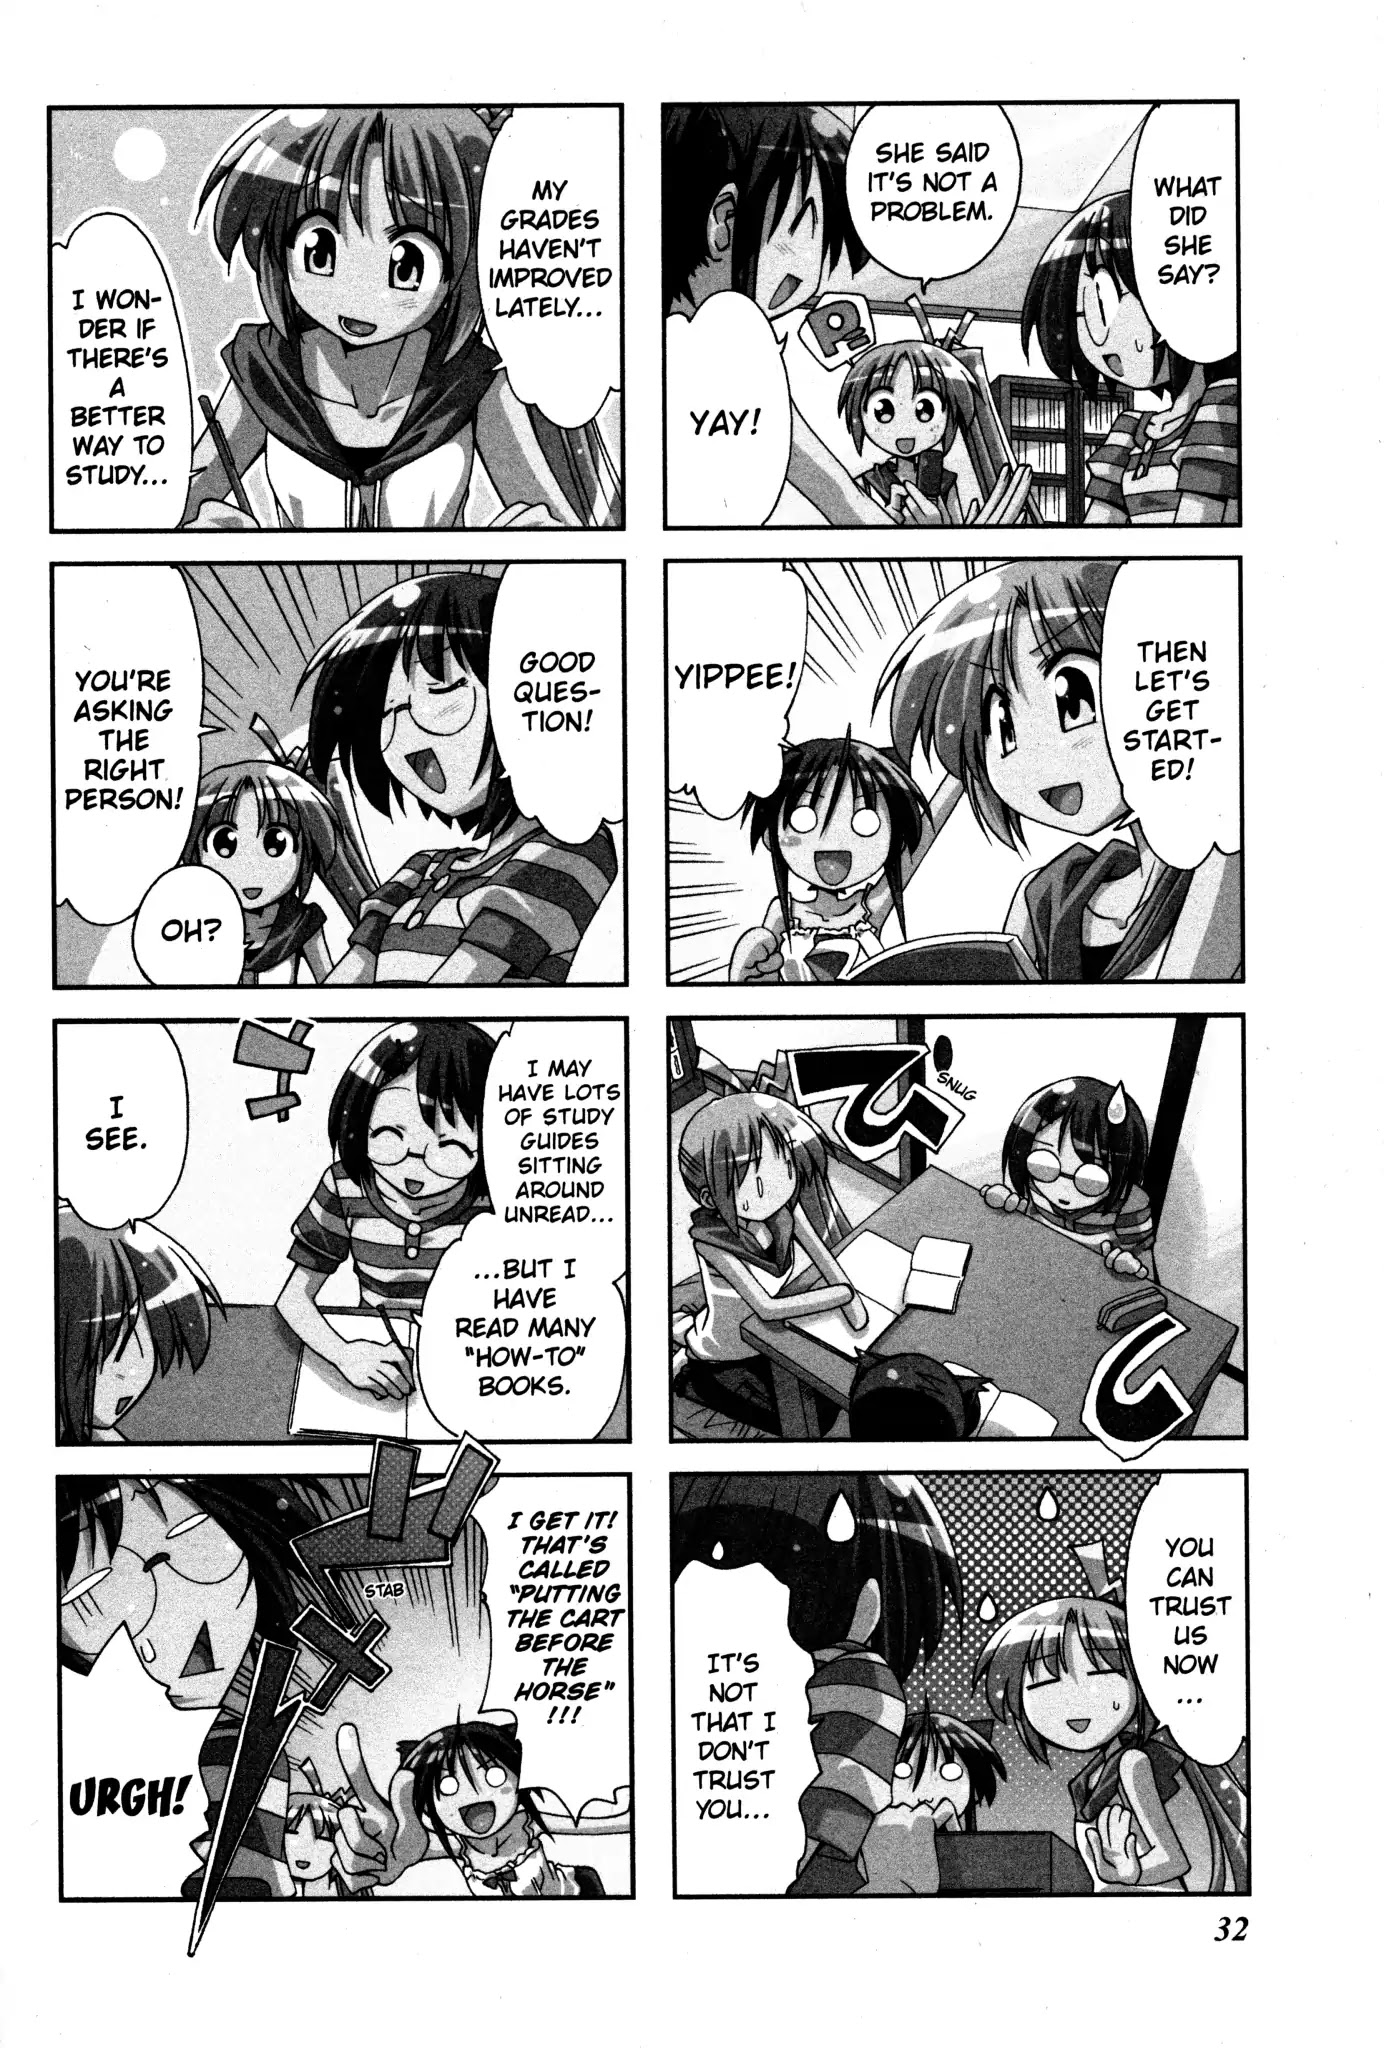 Ichiroh! - Page 2